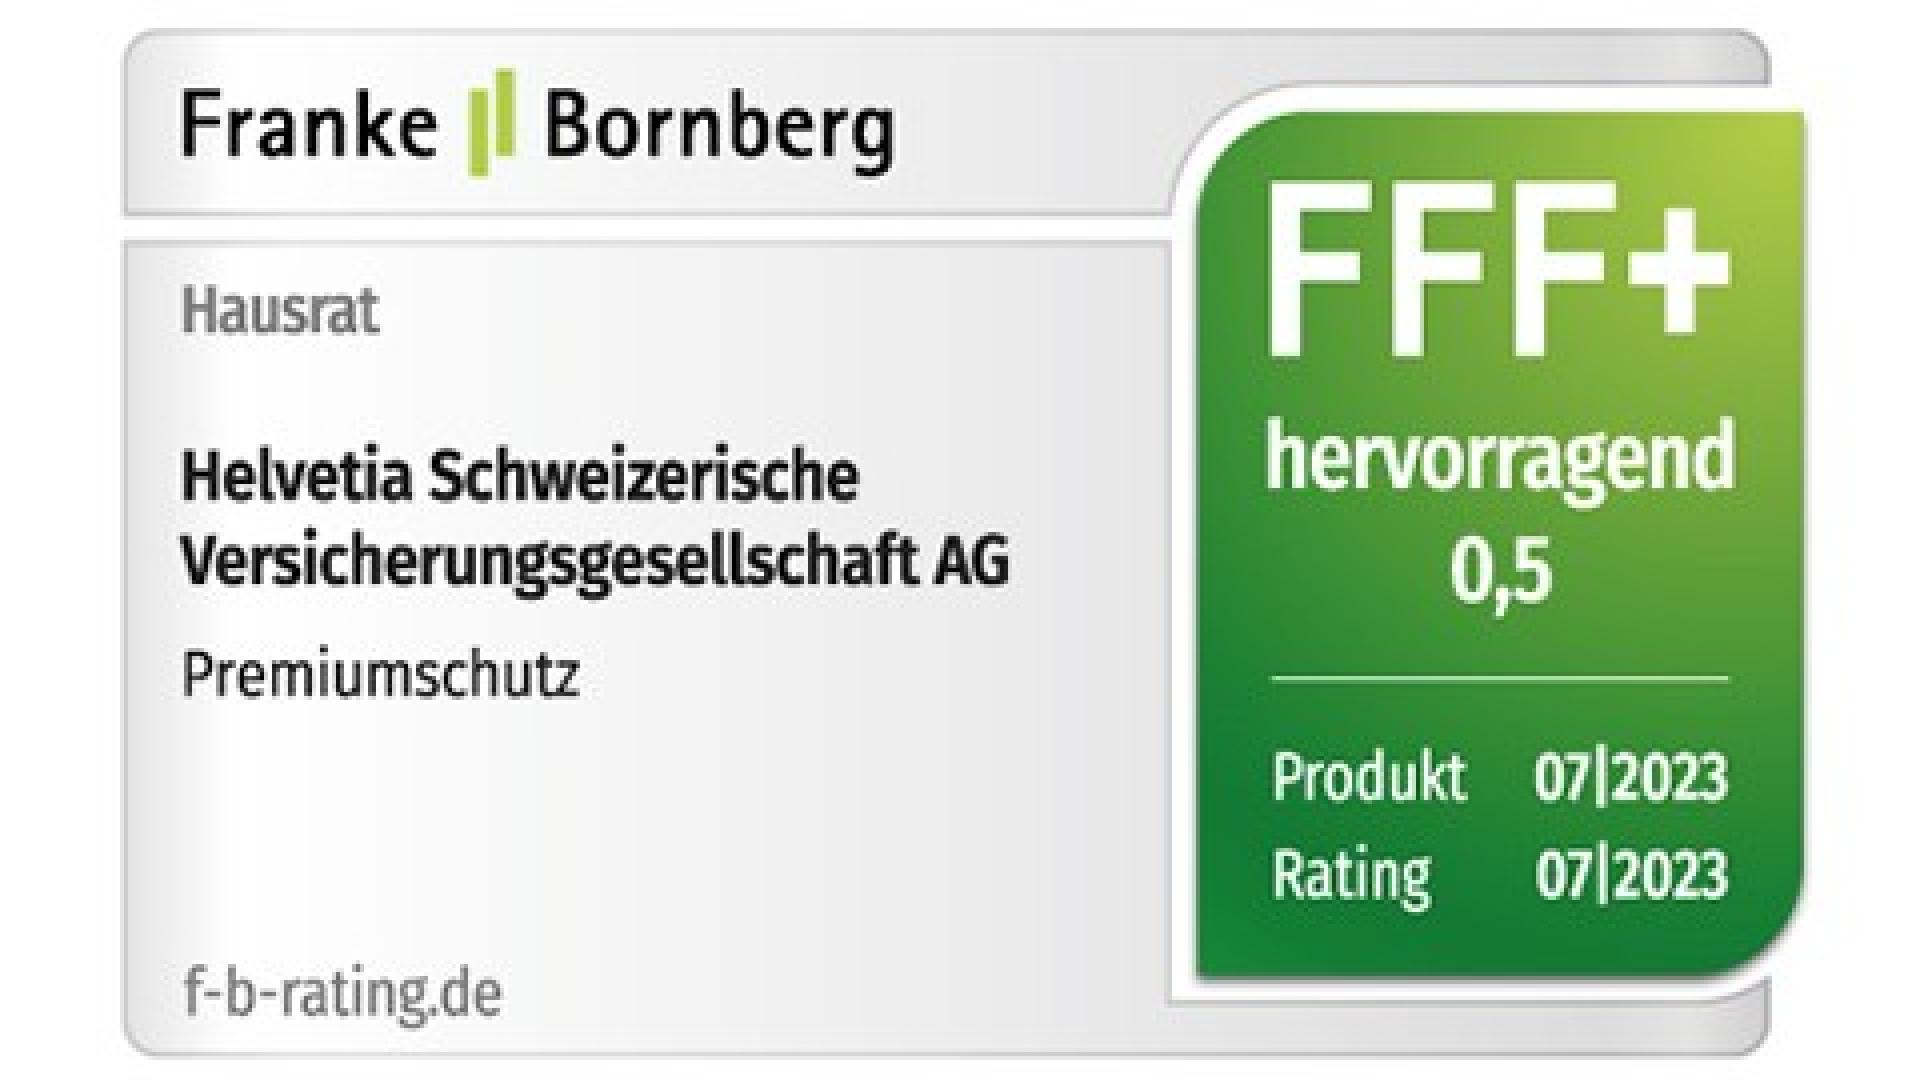 Franke und Bornberg bewerten den Premiumschutz der Hausratversicherung mit dem Leistungsniveau »hervorragend« (07/23)